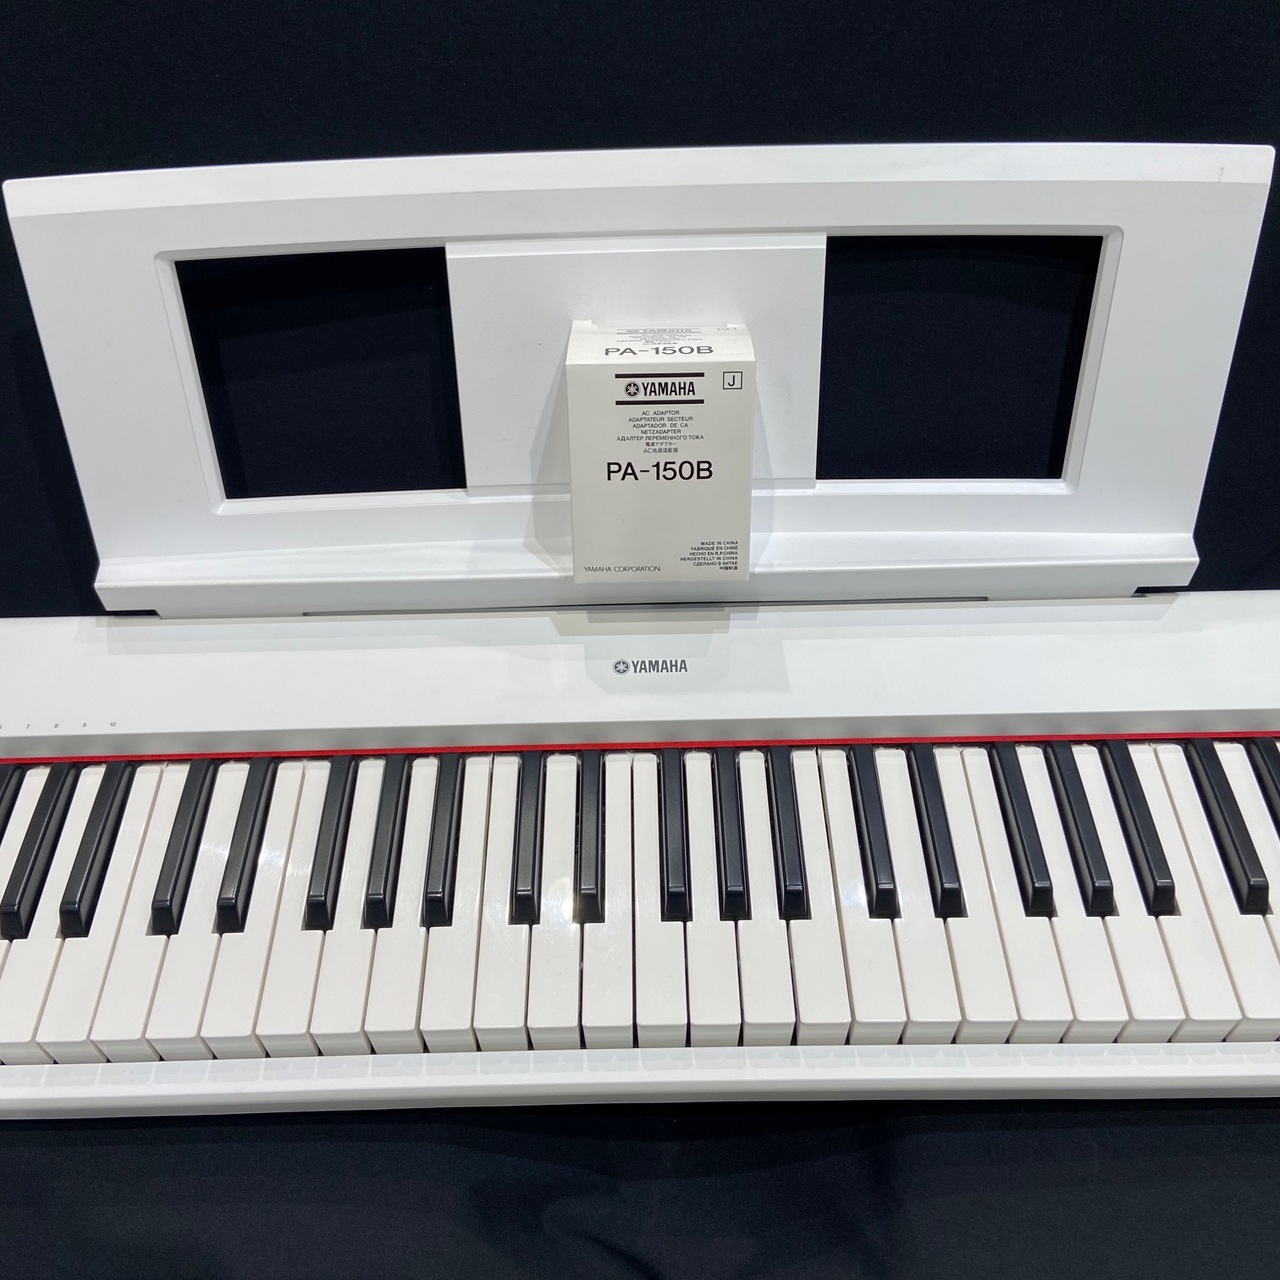 売上安いYAMAHA NP-32WH piaggero（ピアジェーロ） ホワイト 鍵盤楽器